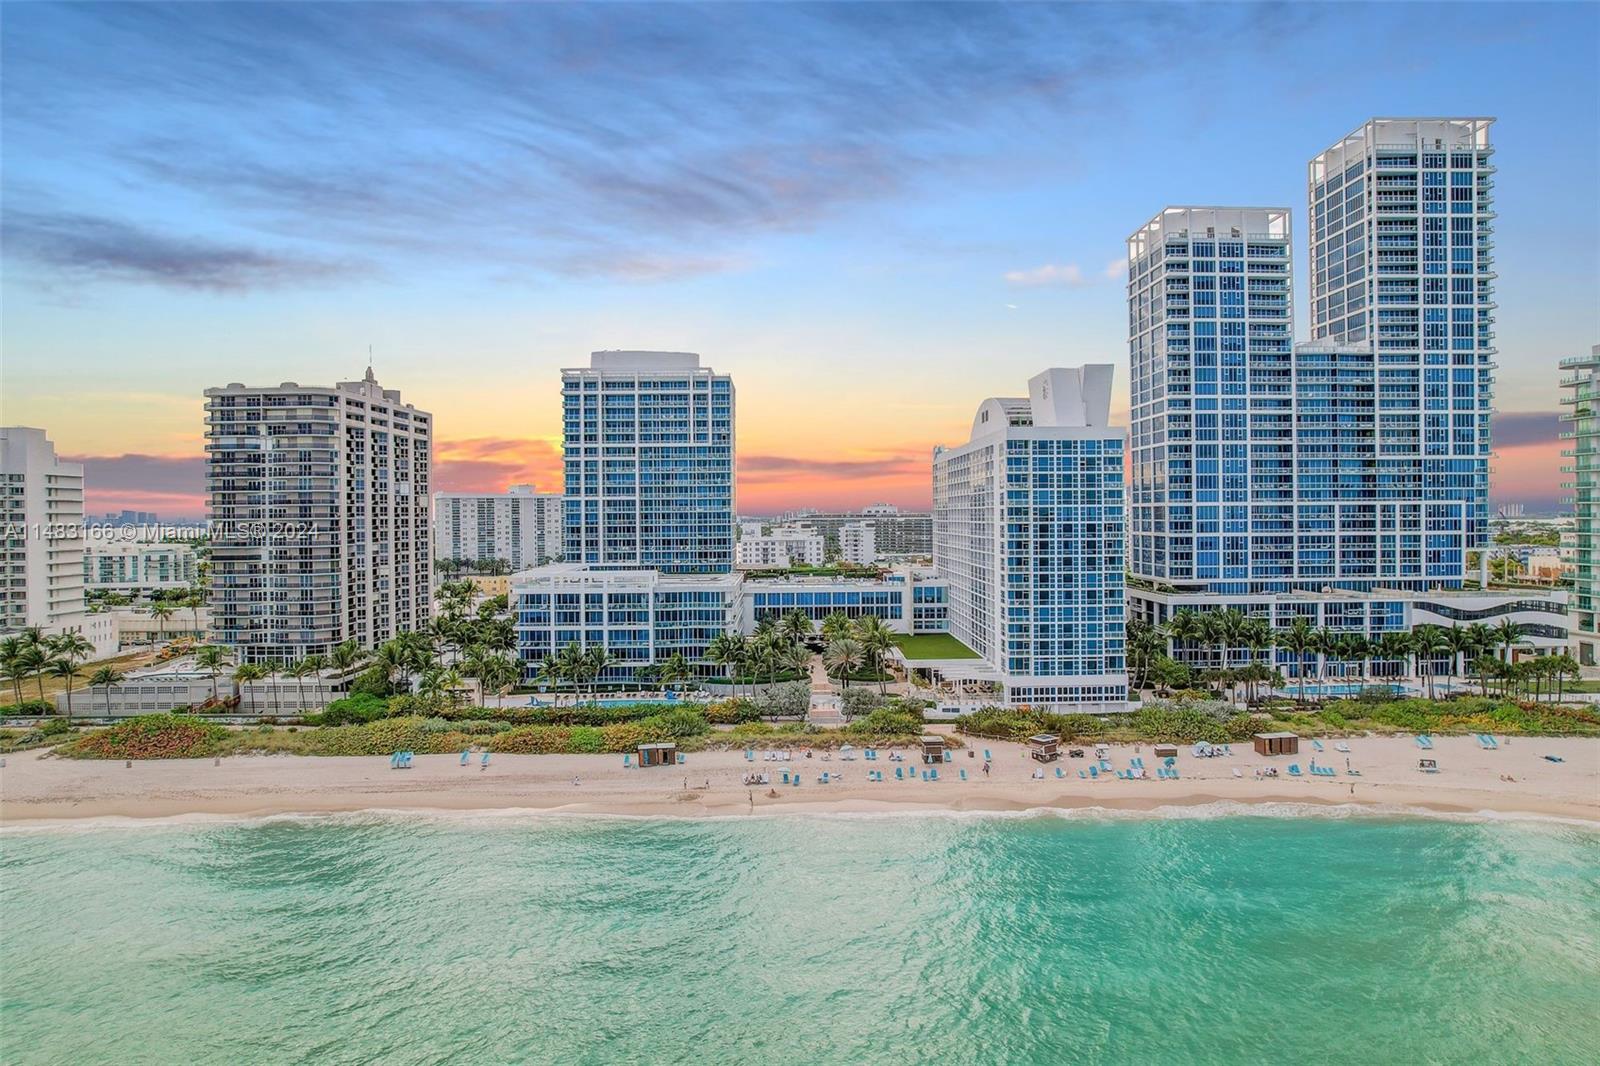 Condo for Sale in Miami Beach, FL